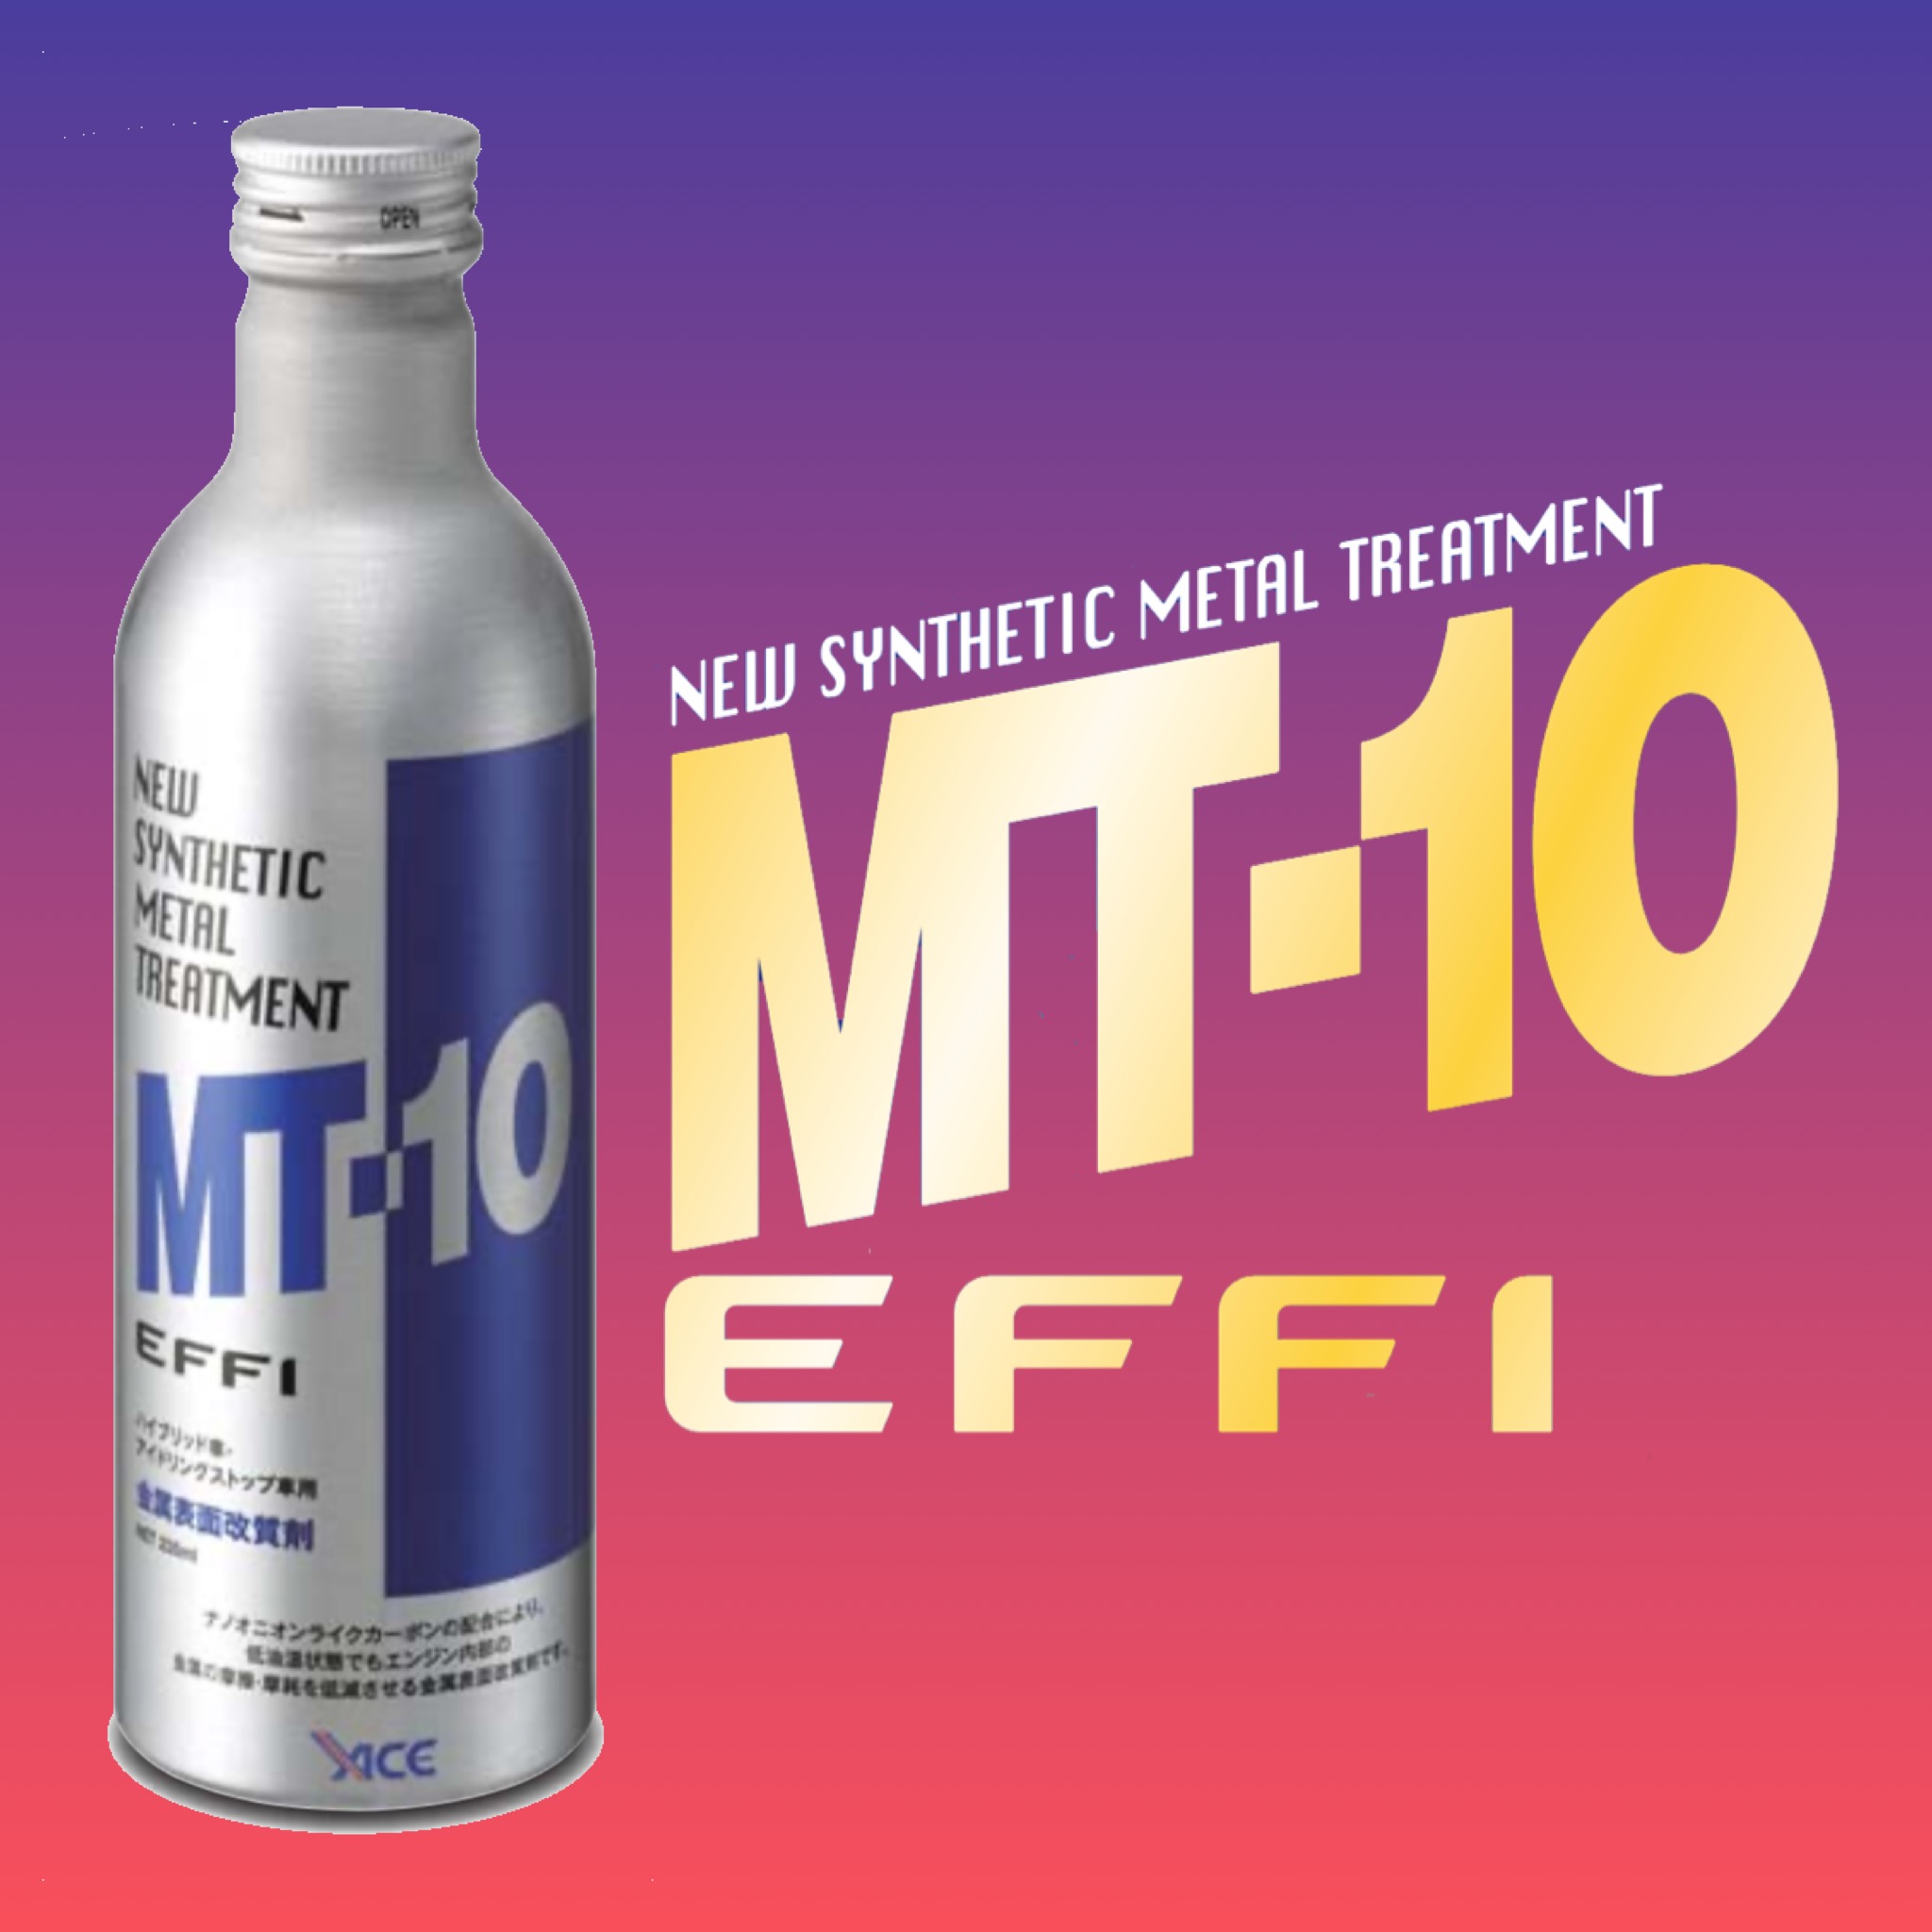 MT-10